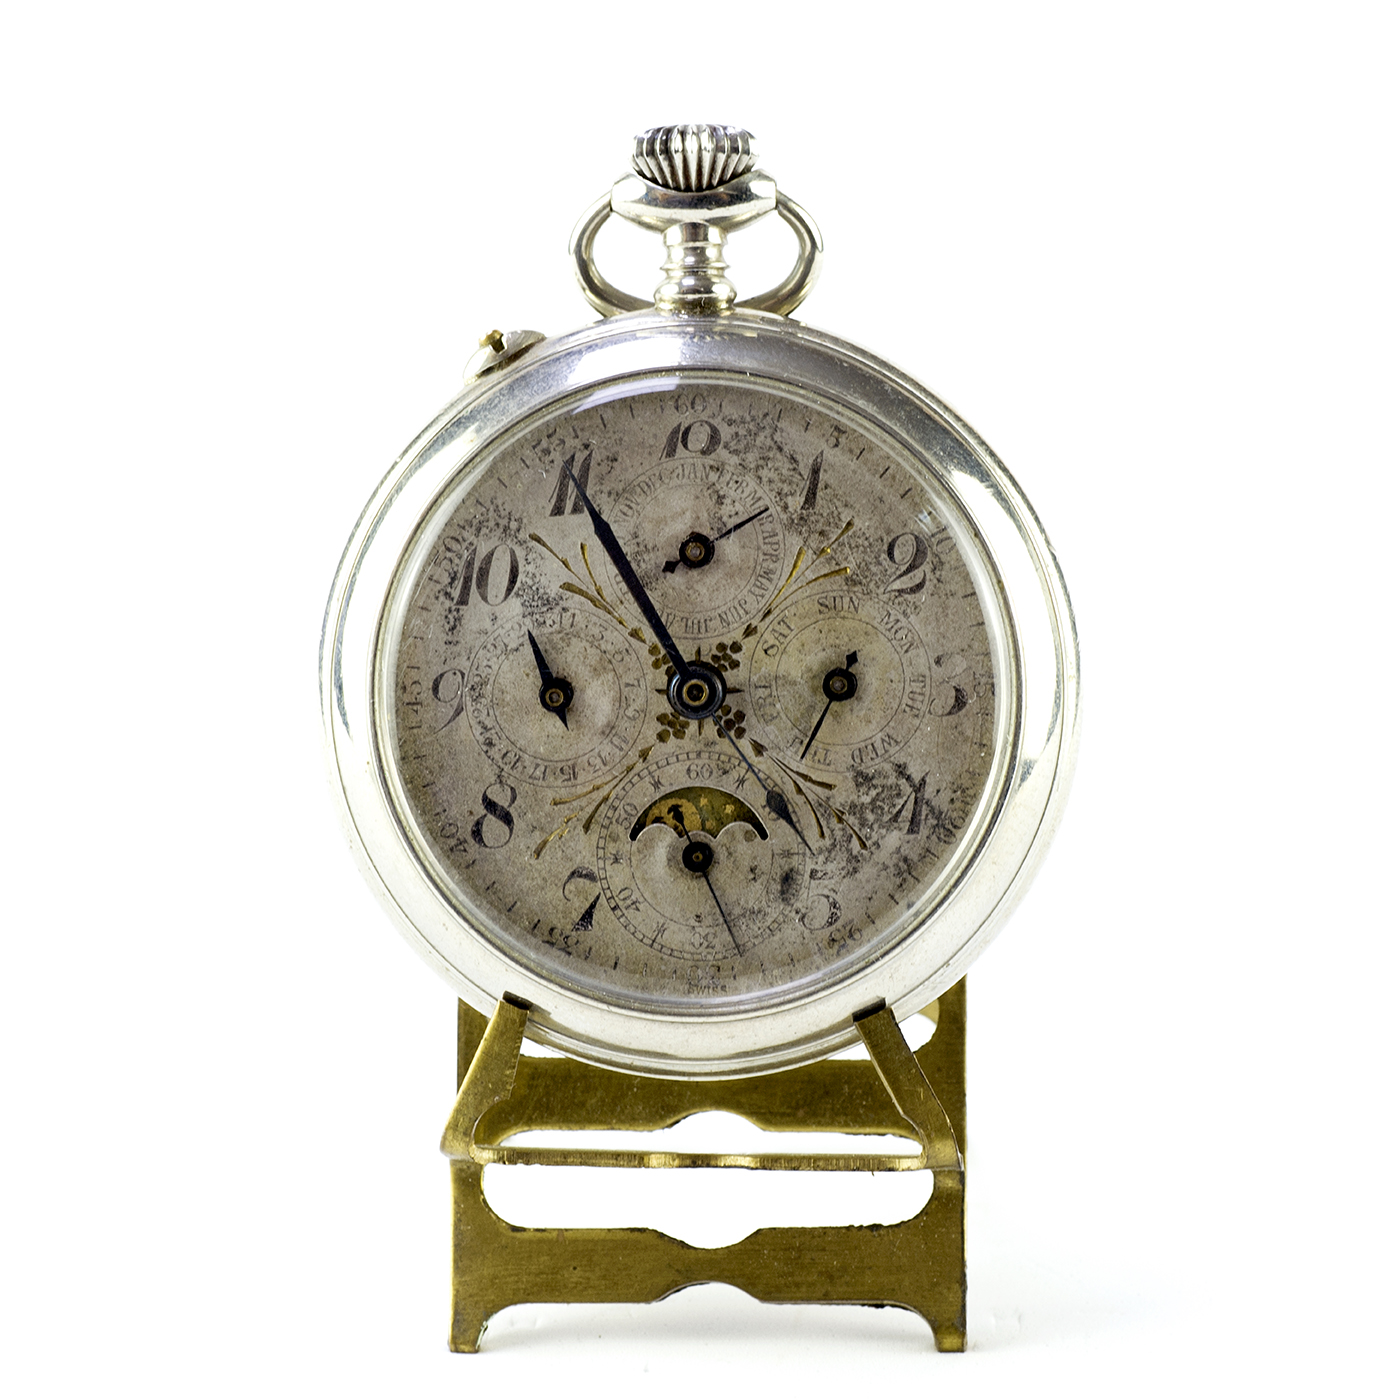 J.H. HASLER & FILS. Reloj de Bolsillo, lepine y remontoir. Triple calendario y fase lunar. Suiza, ca. 1890.